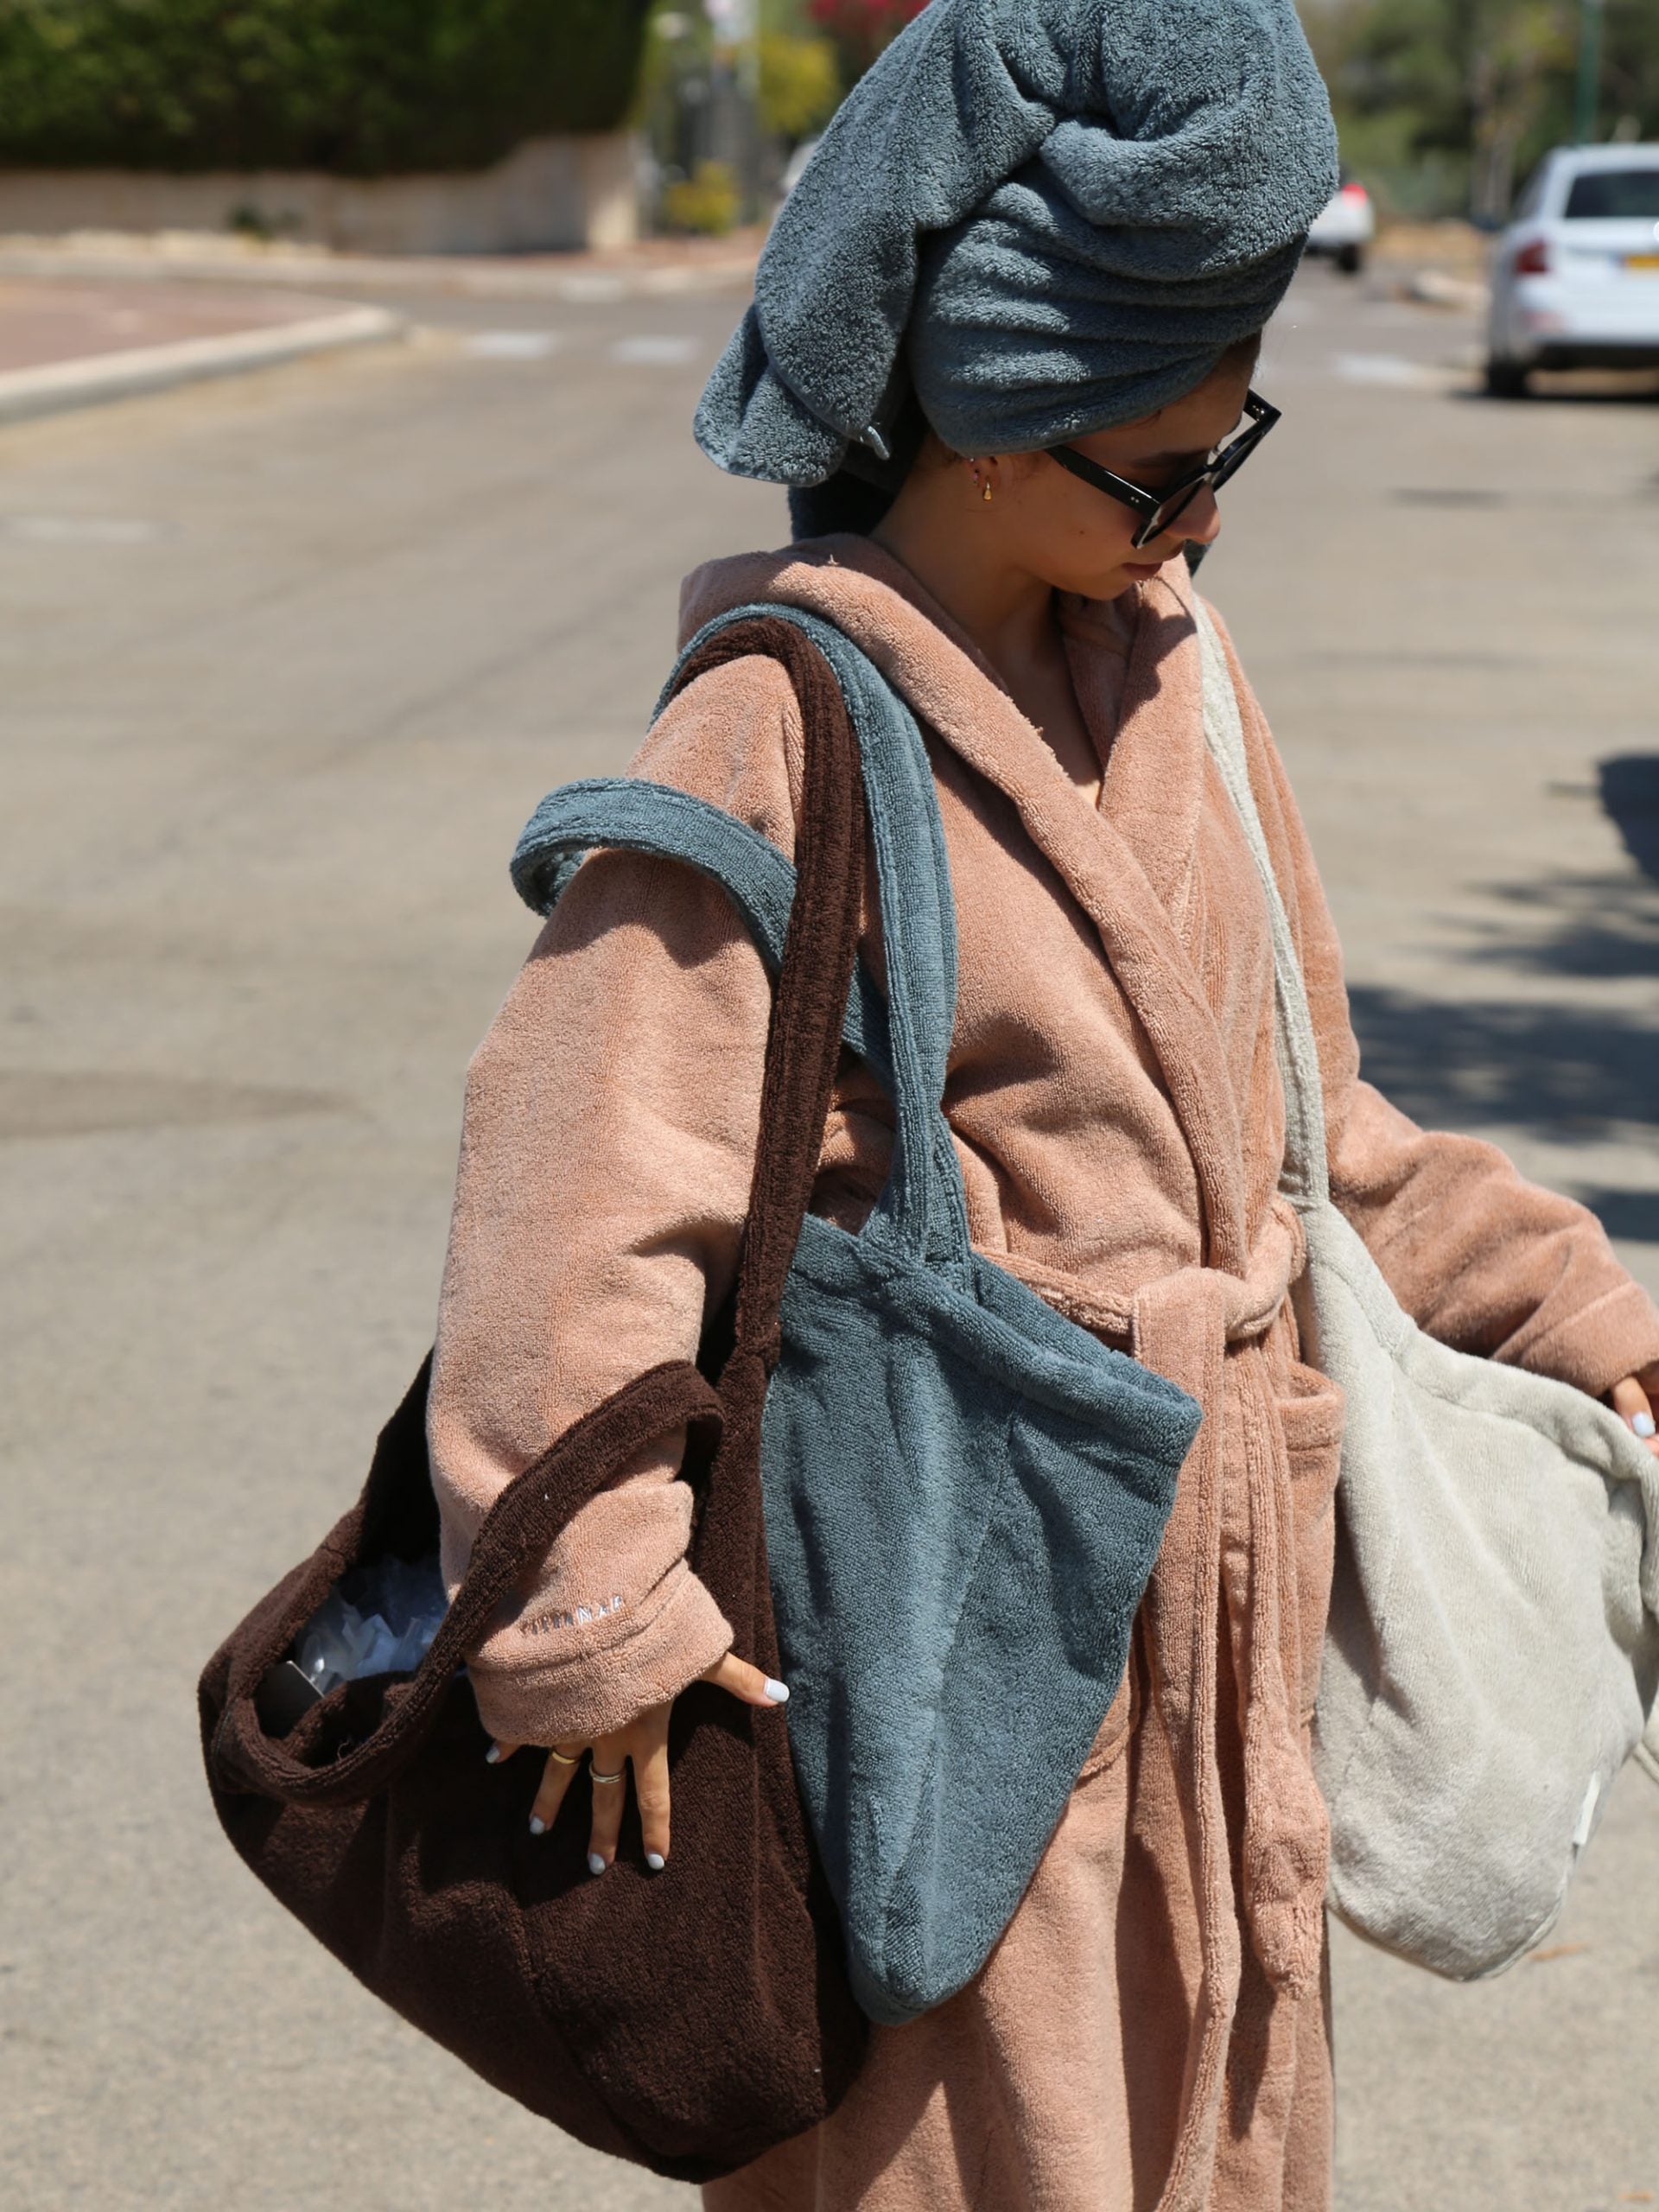 אישה לבושה בחלוק עם מגבת על הראש עונדת 3 תיקים לים 